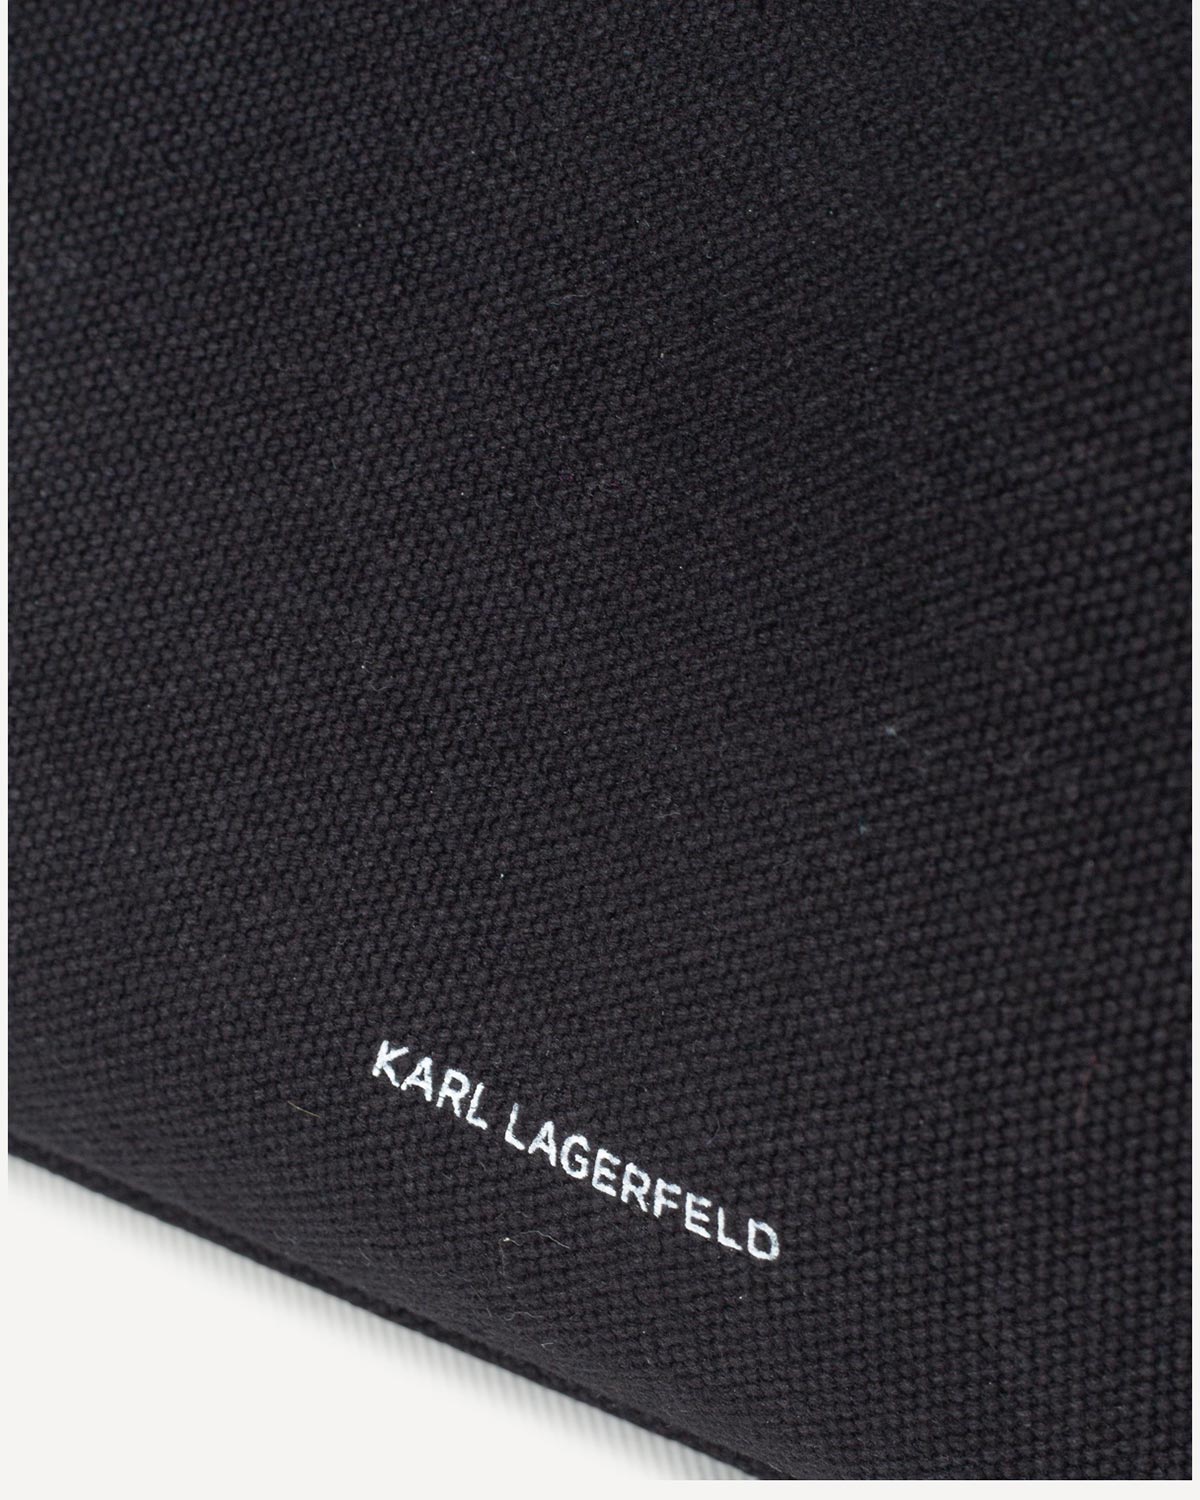 Γυναίκα - Shopping - Karl Lagerfeld Μαύρο